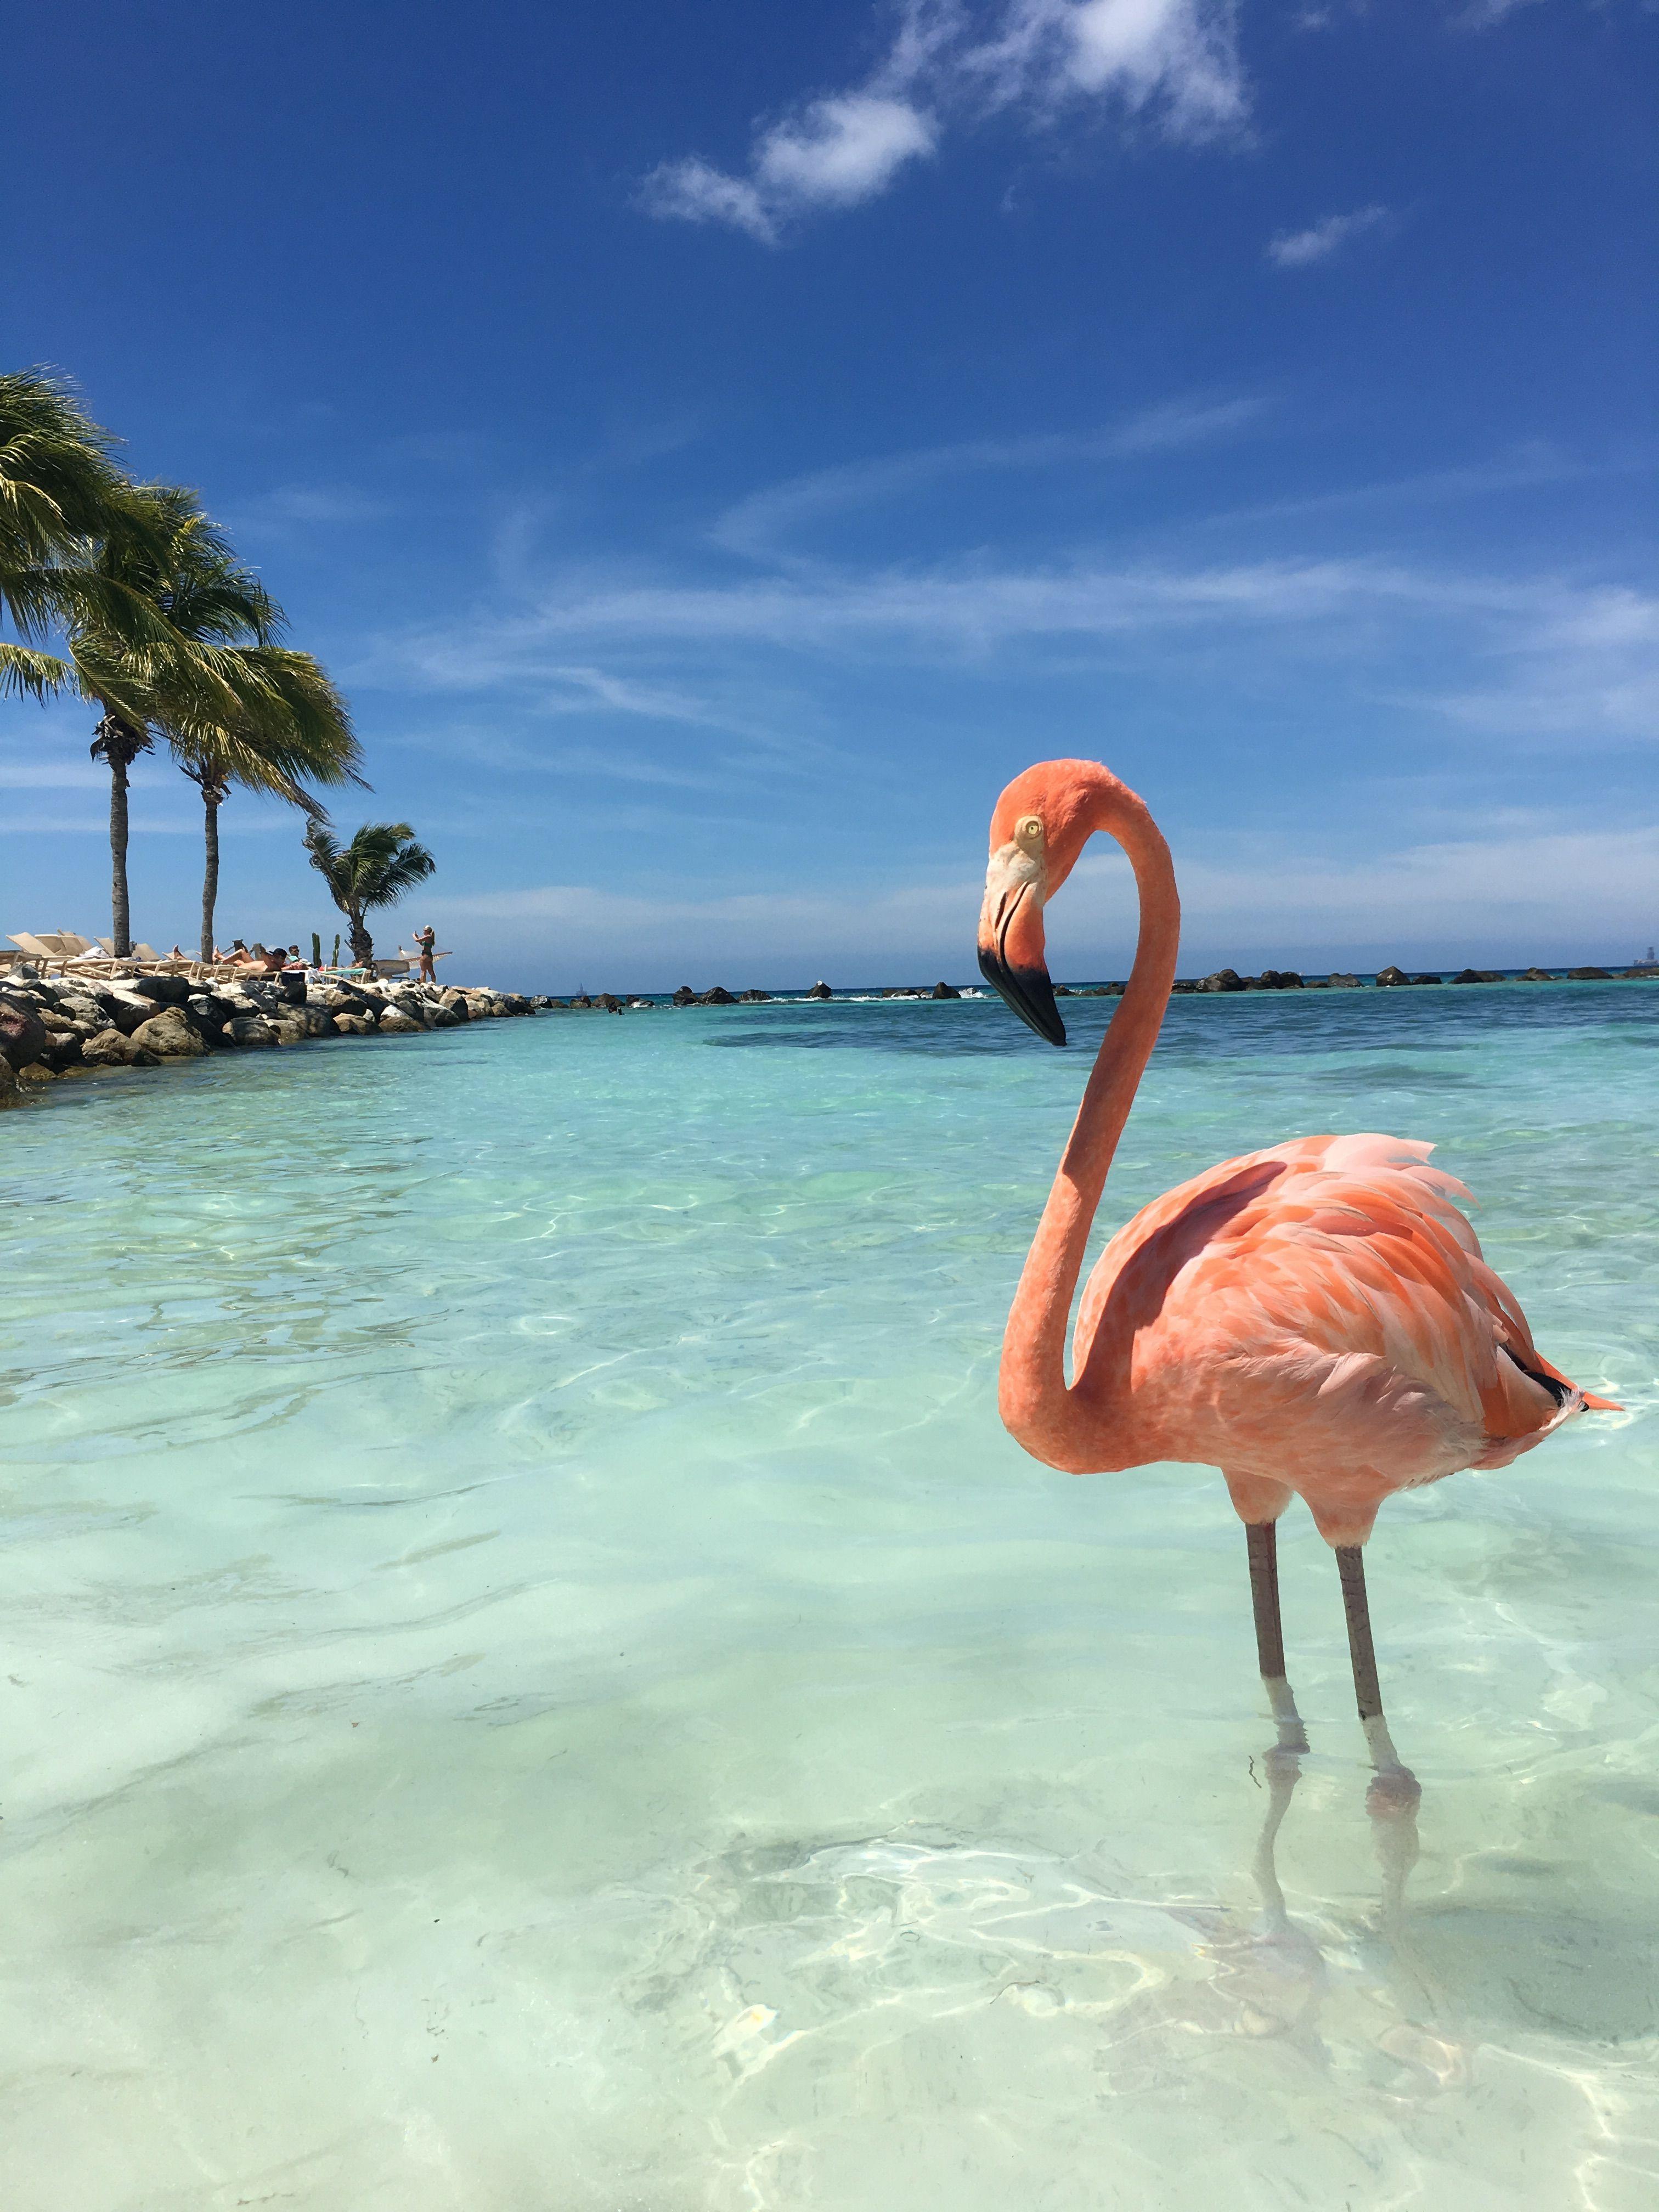 3024 x 4032 · jpeg - Flamingo Beach Aruba | Flamingo pictures, Flamingo beach aruba ...